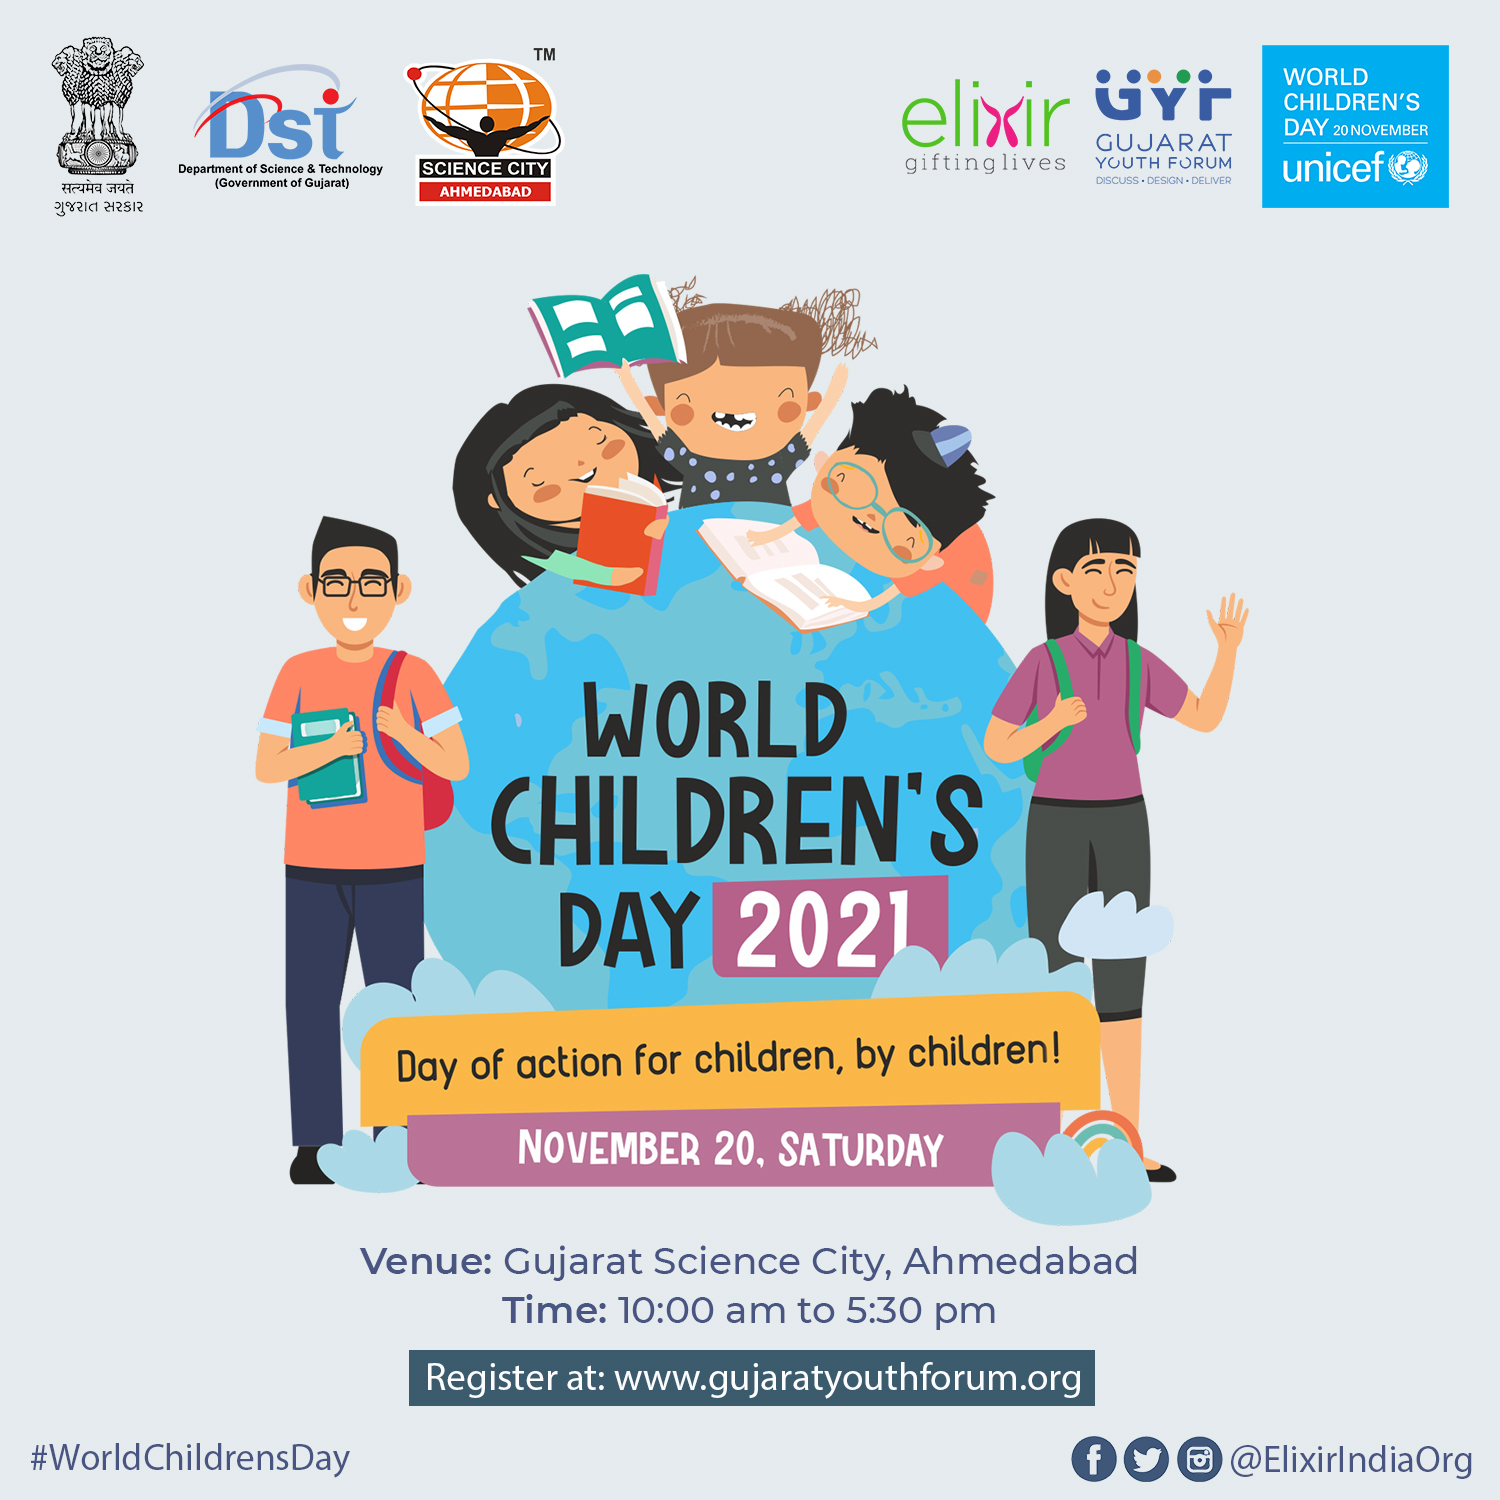 World Children's Day 2021